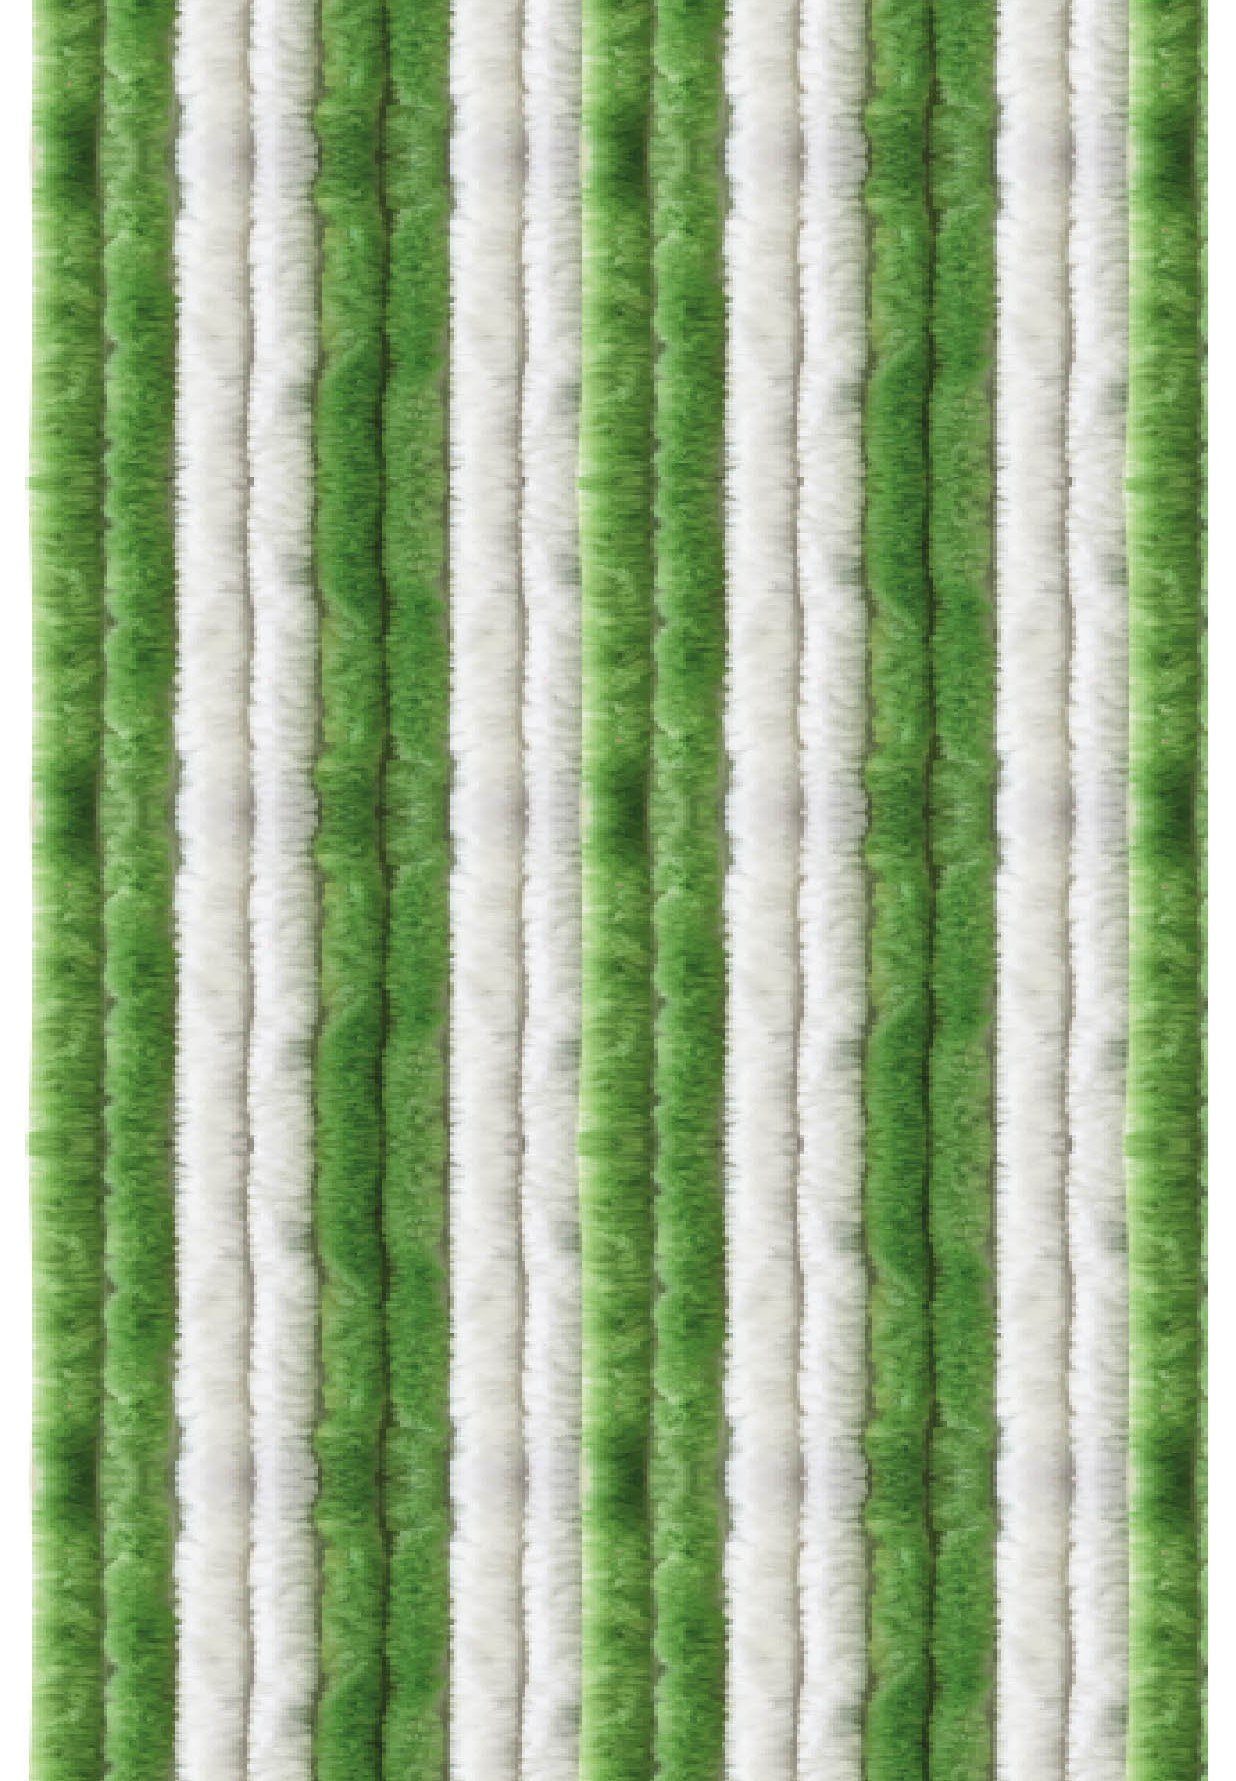 Türvorhang Flauschi, Arsvita, Ösen (1 St), Flauschvorhang 160x185 cm in Unistreifen grün - weiß, viele Farben